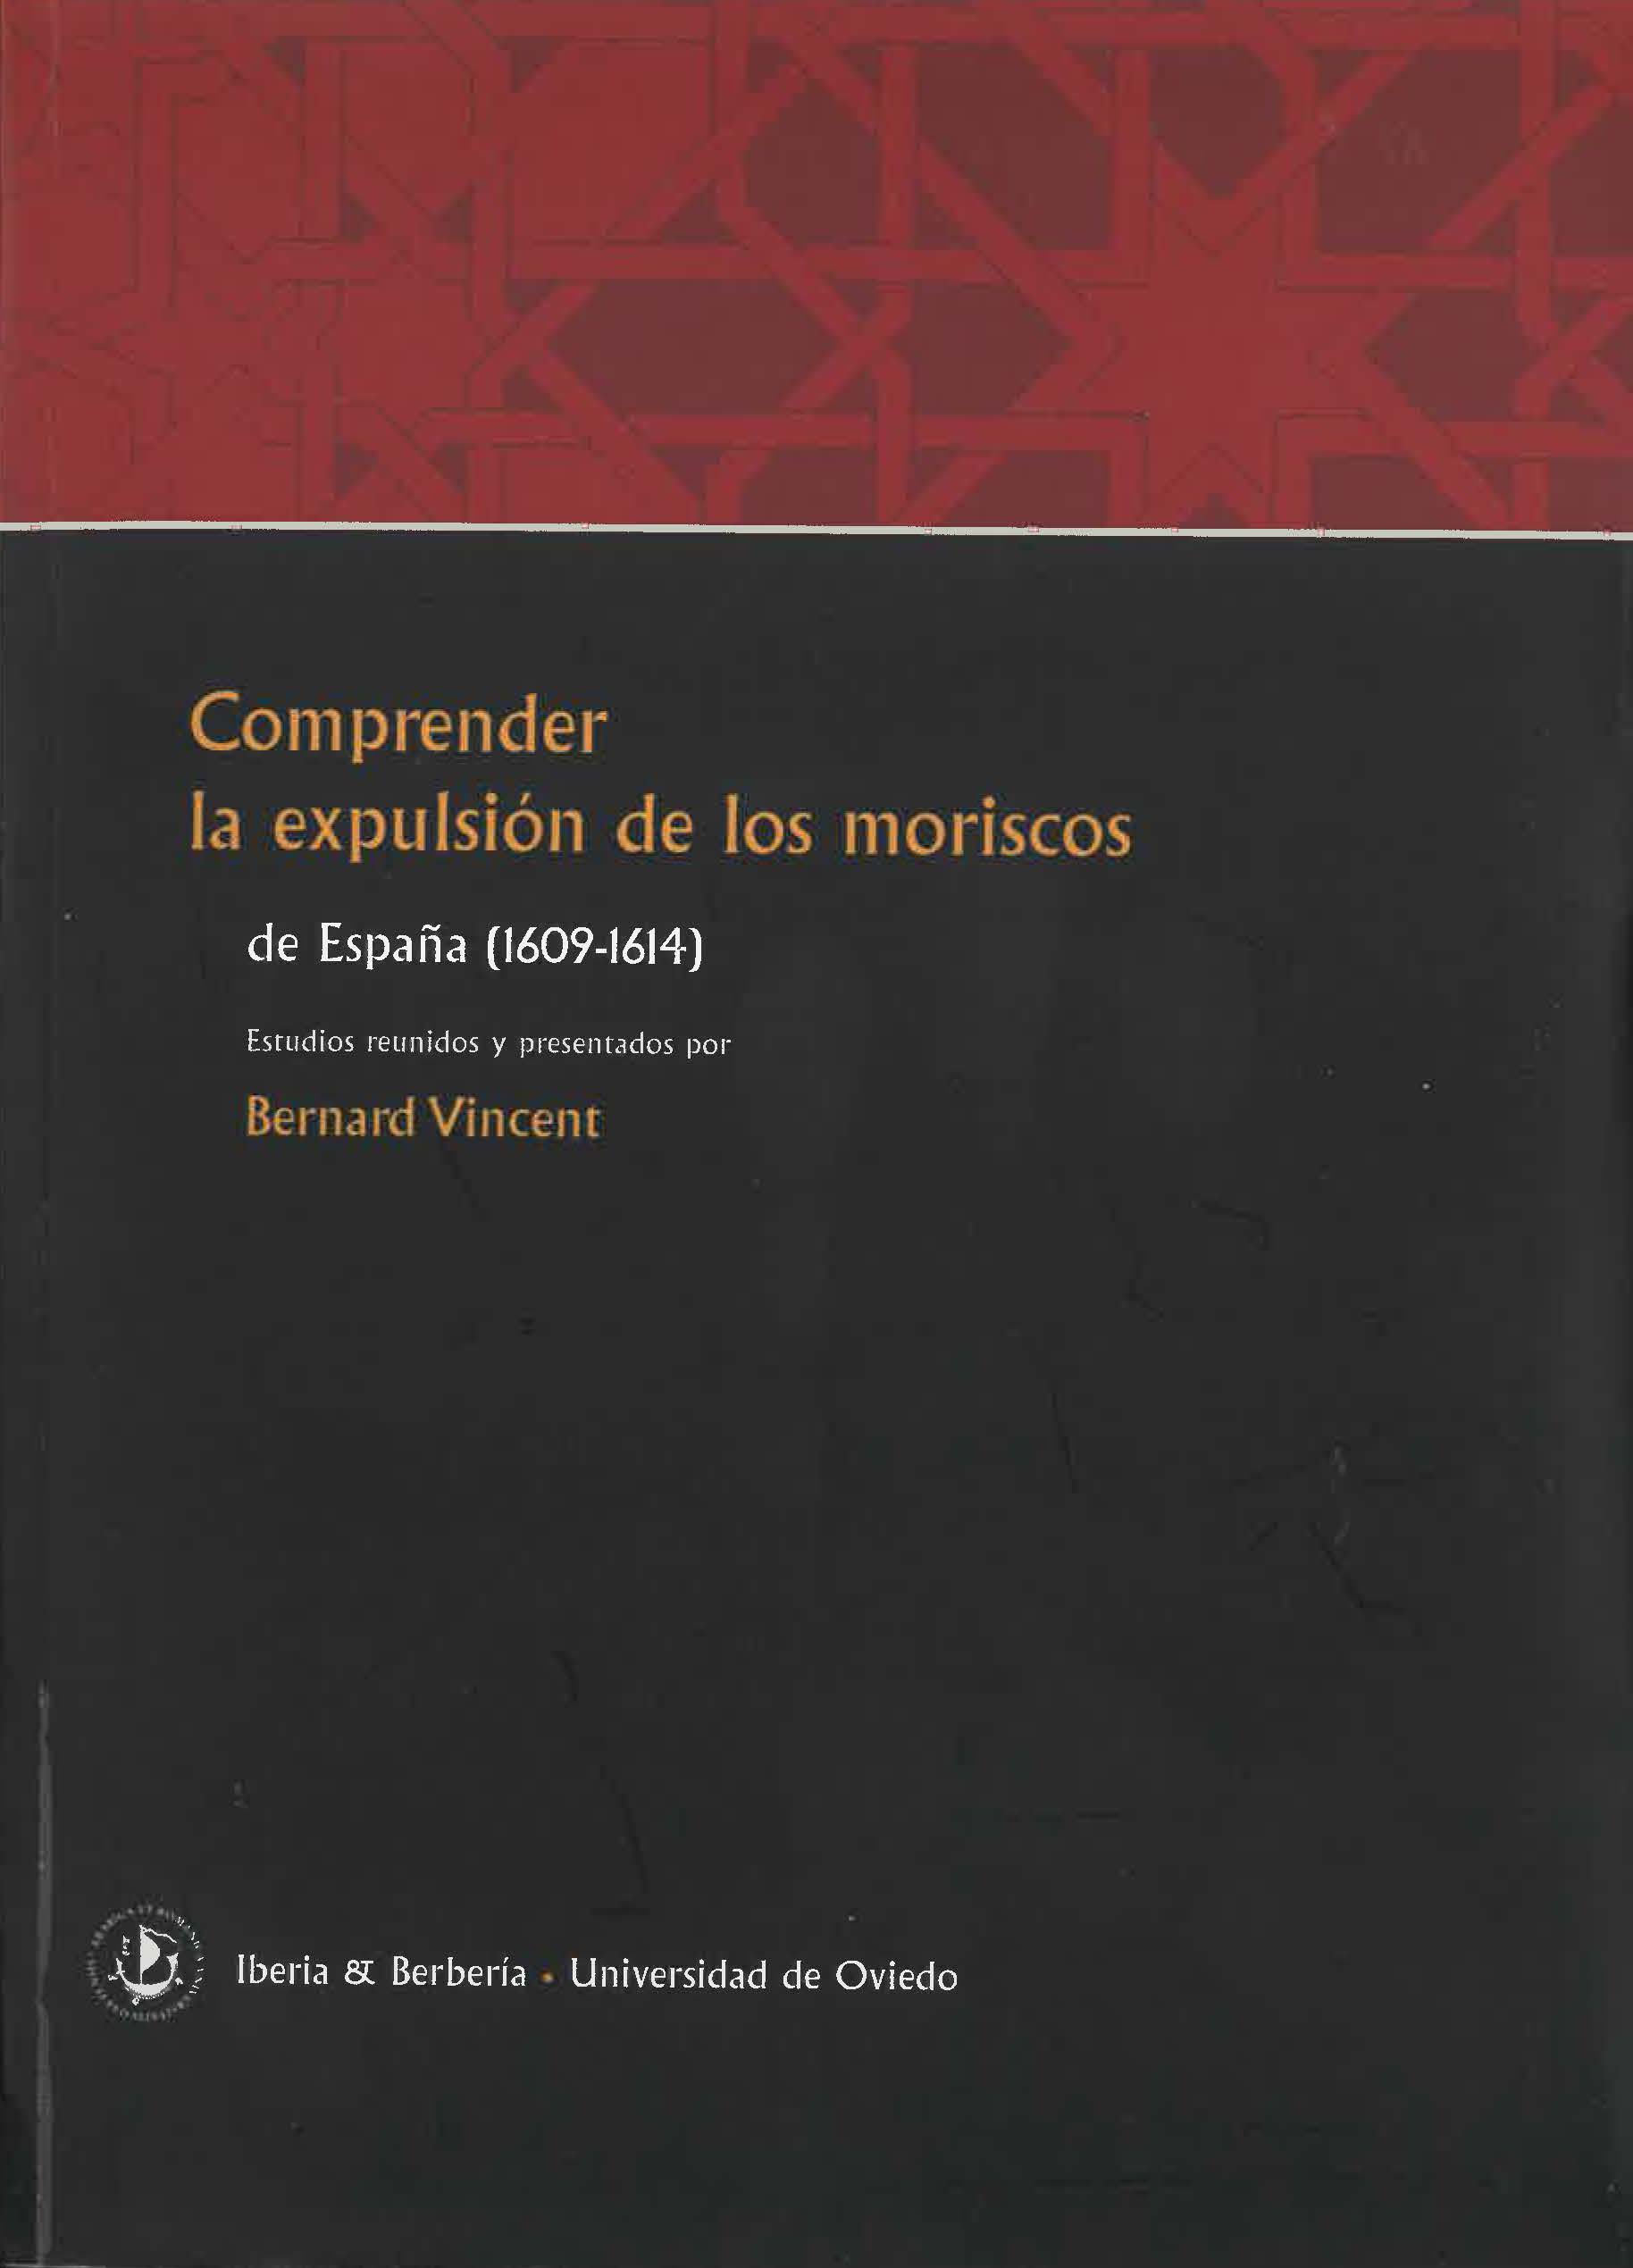 Comprender la expulsión de los moriscos de España (1609-1614)